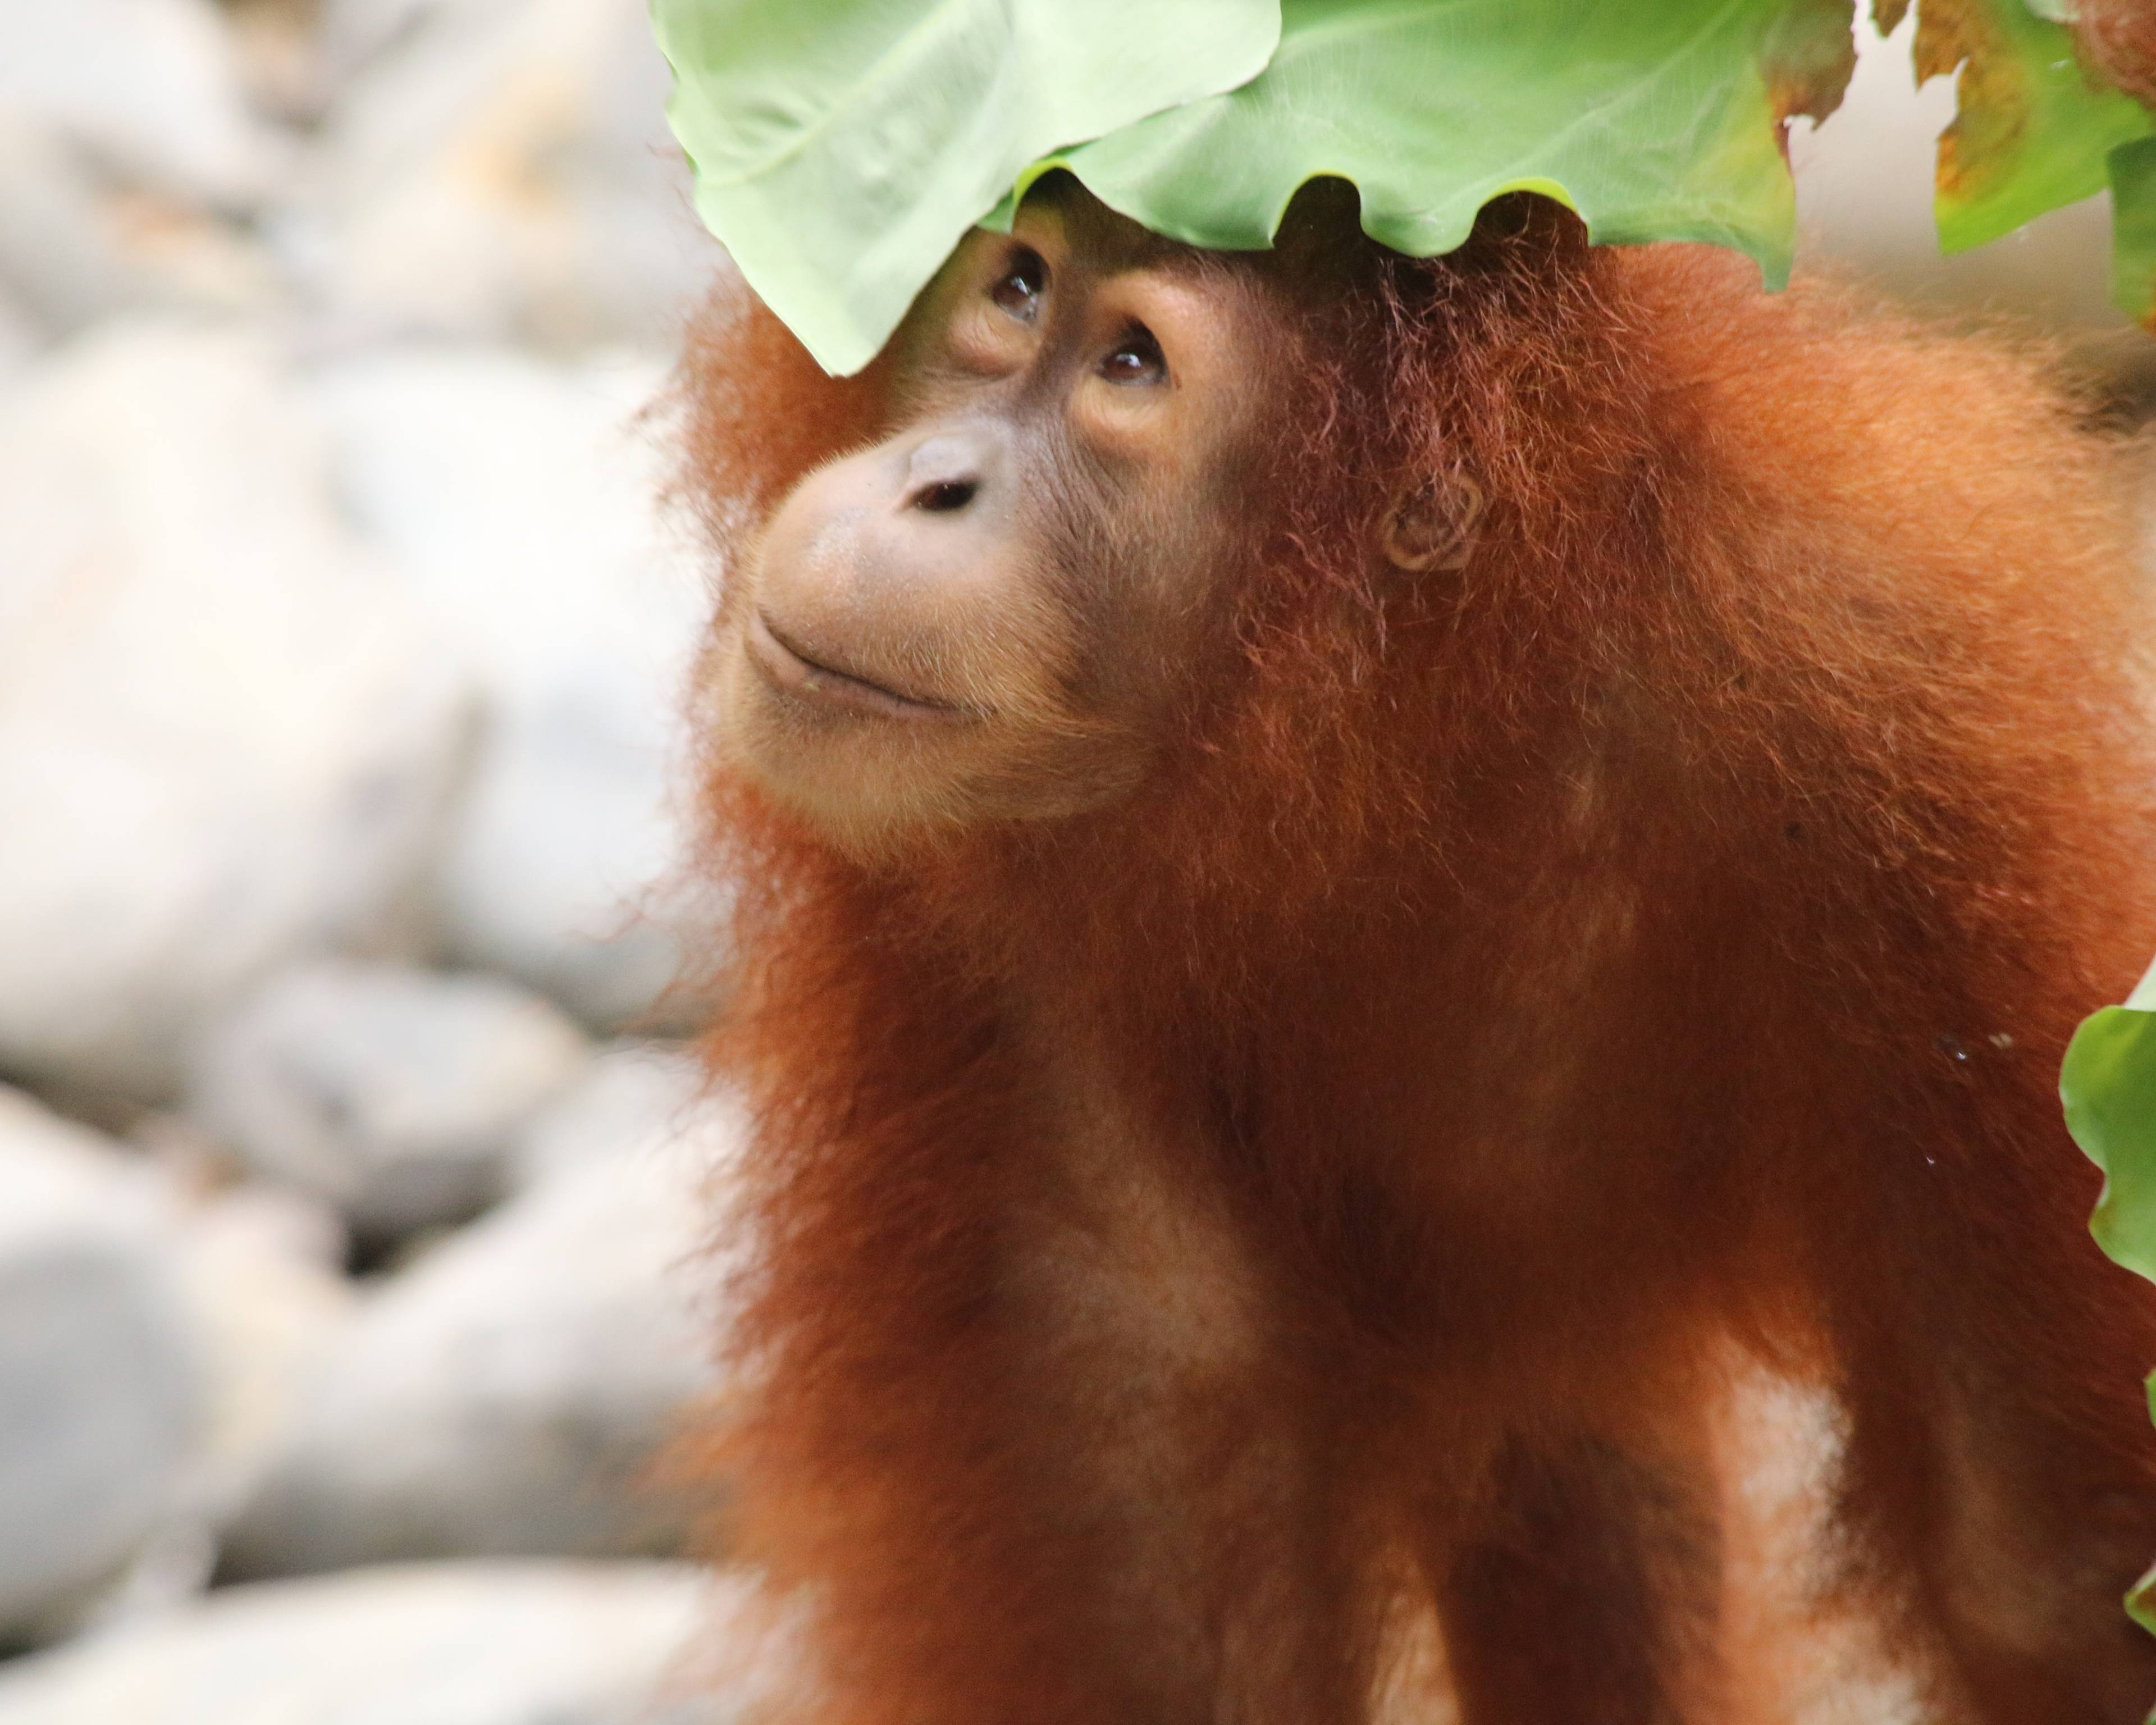 Öko-Abenteuer Inselvielfalt: Sumatra, Java und Bali nachhaltig erkunden